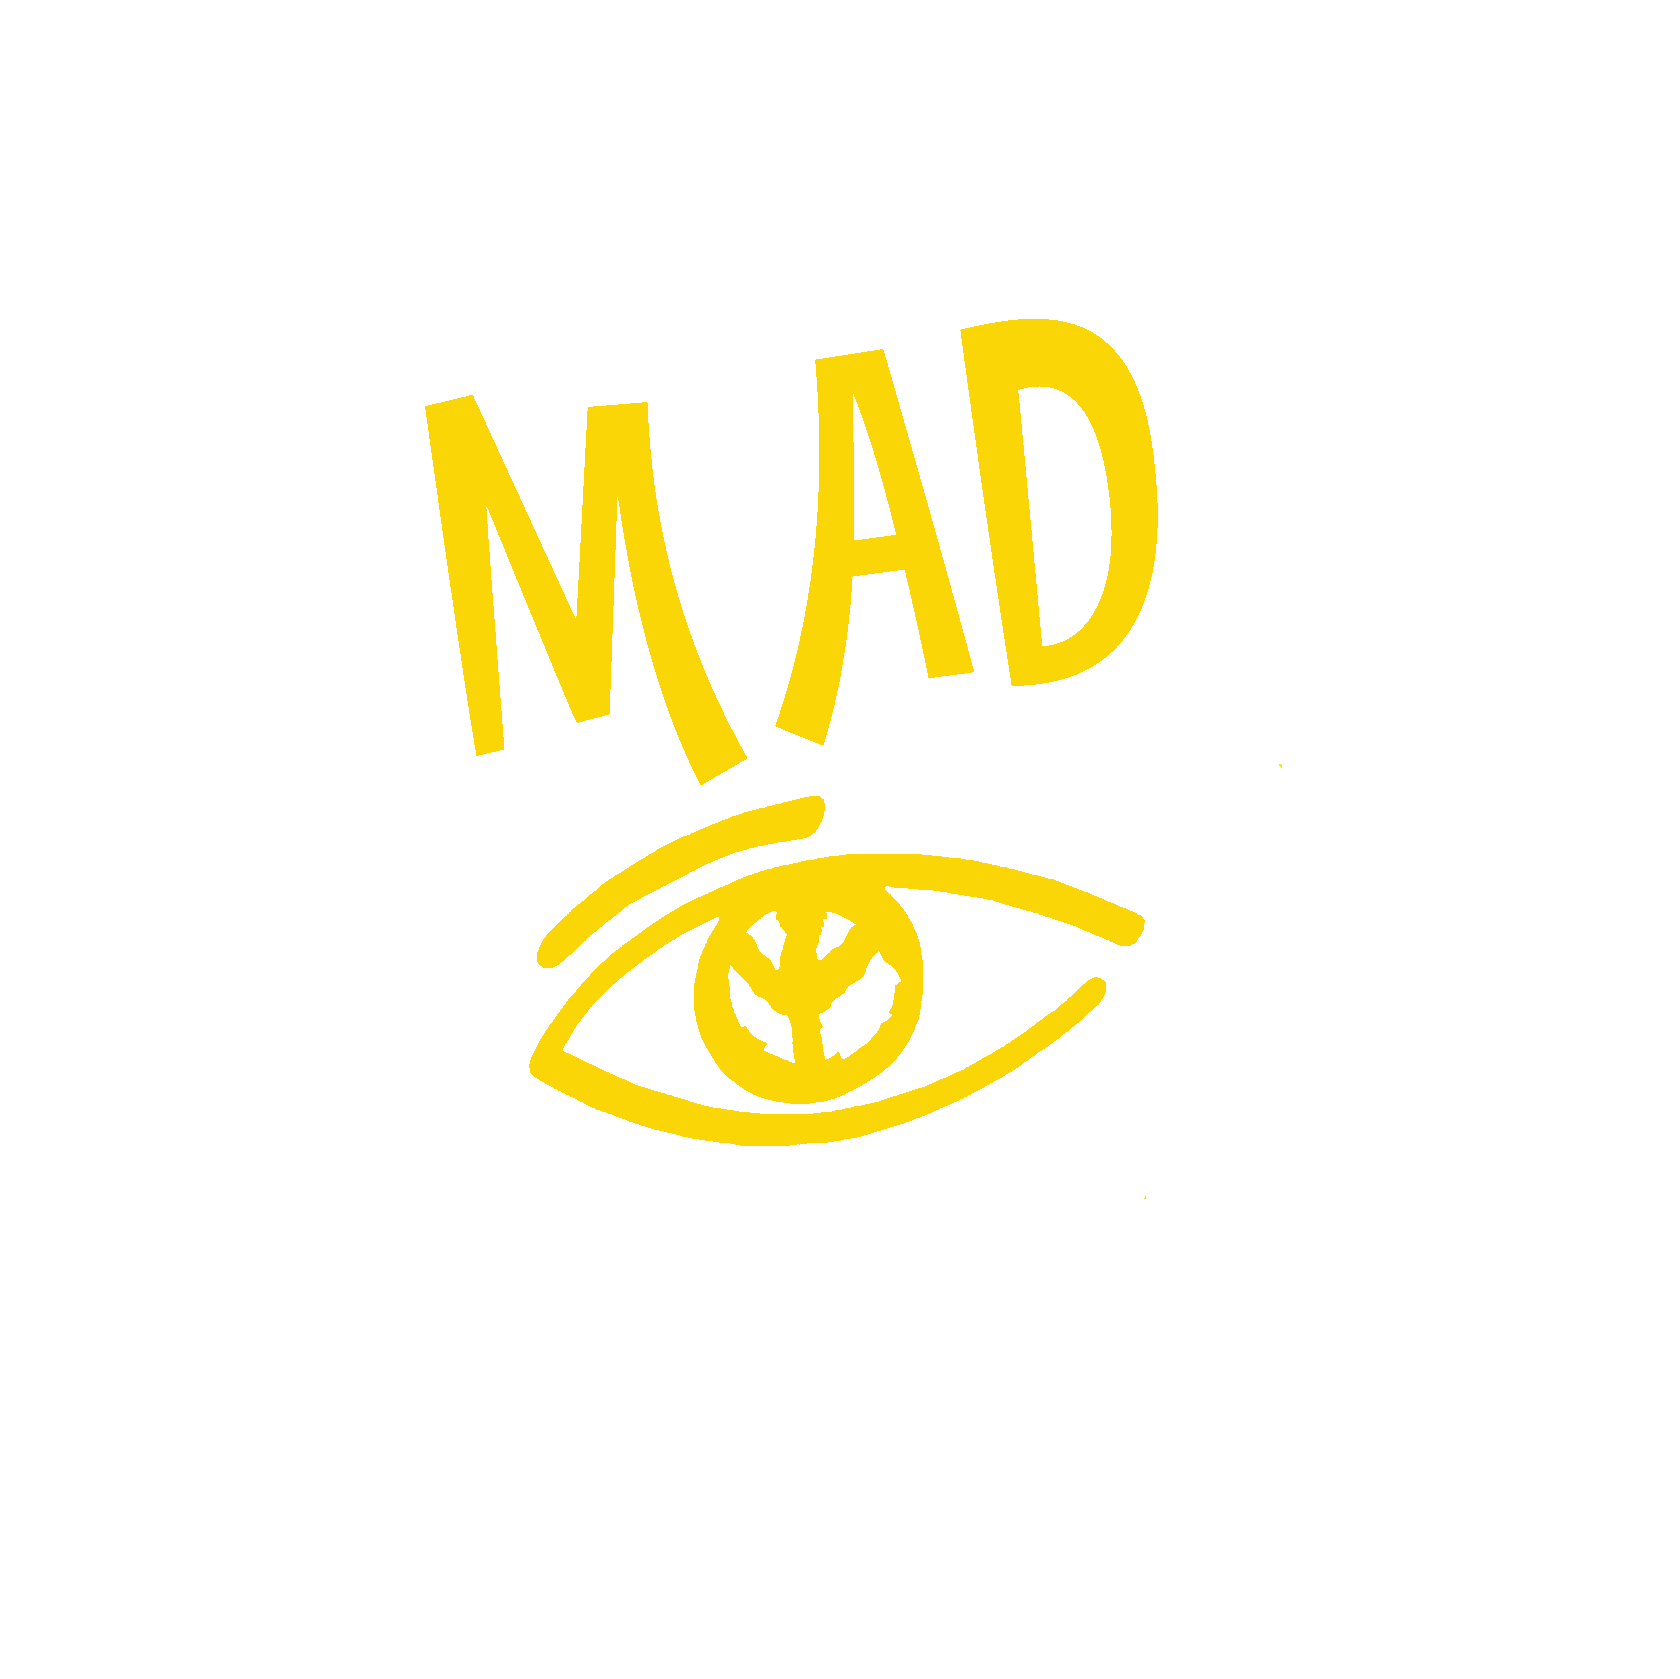 MAD